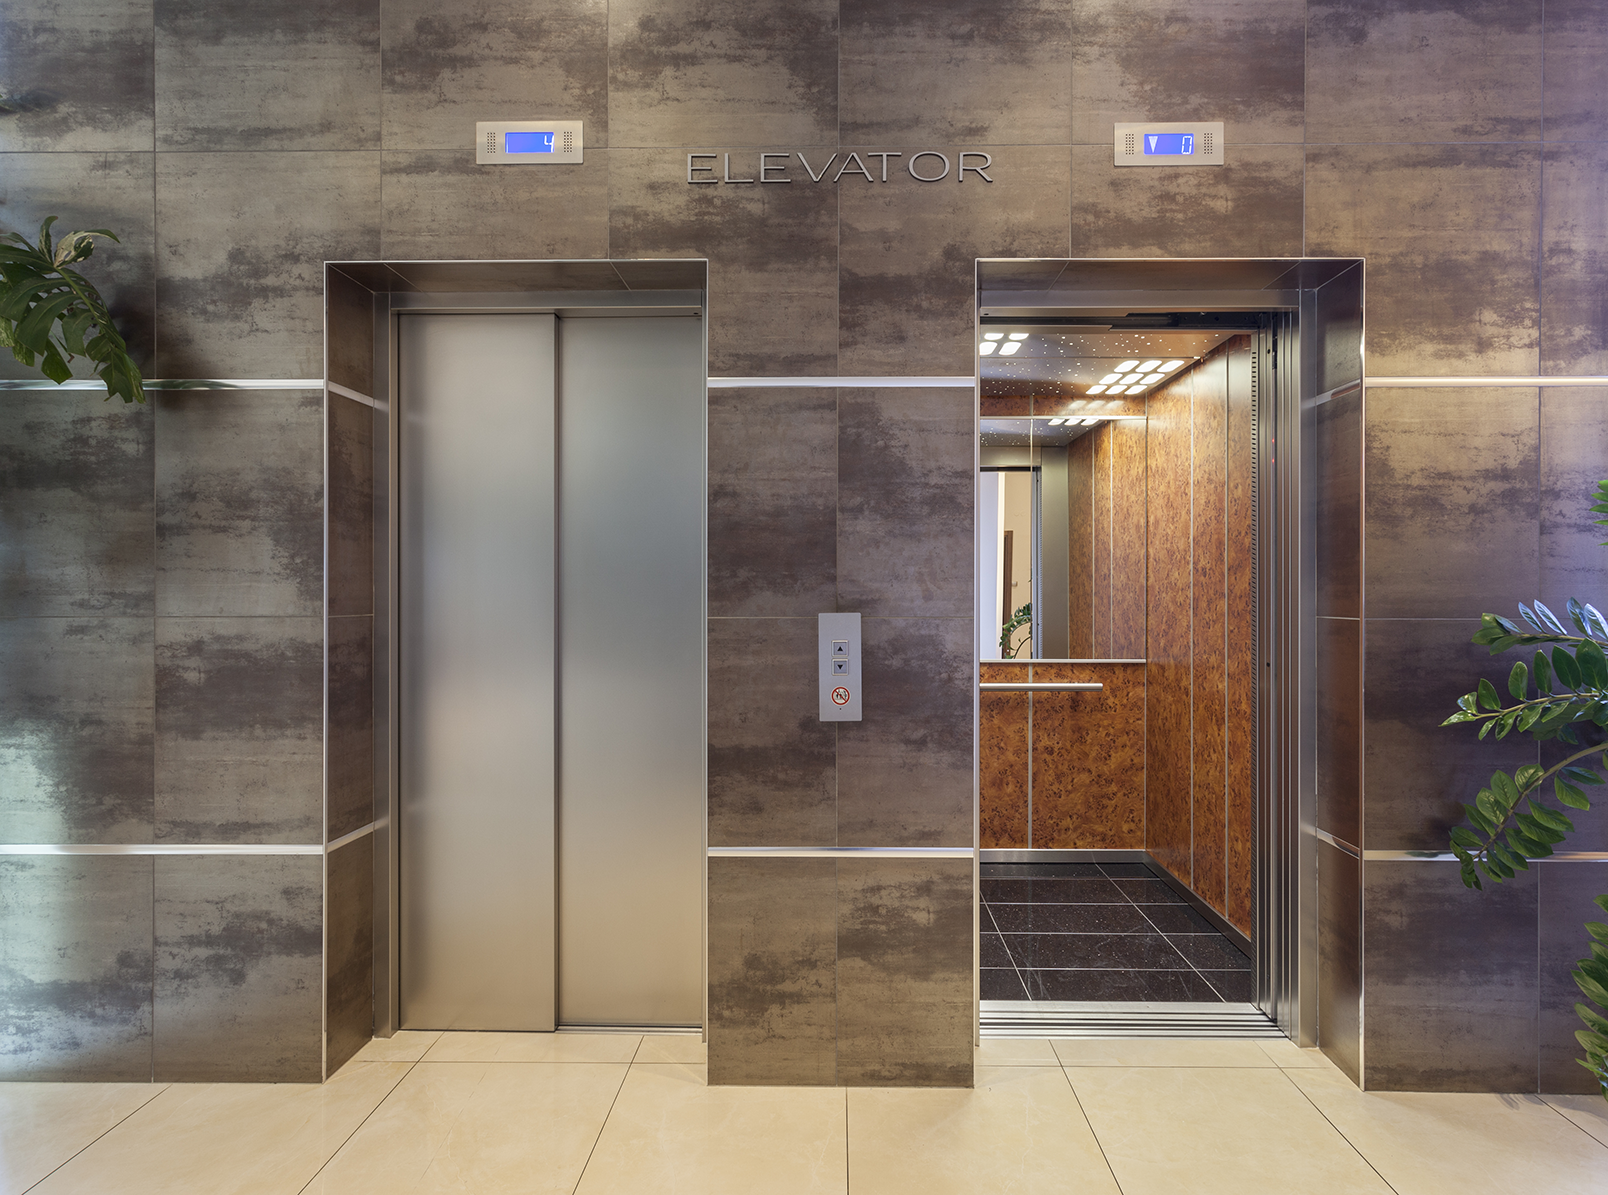 Elevator modernisation: Is it time?